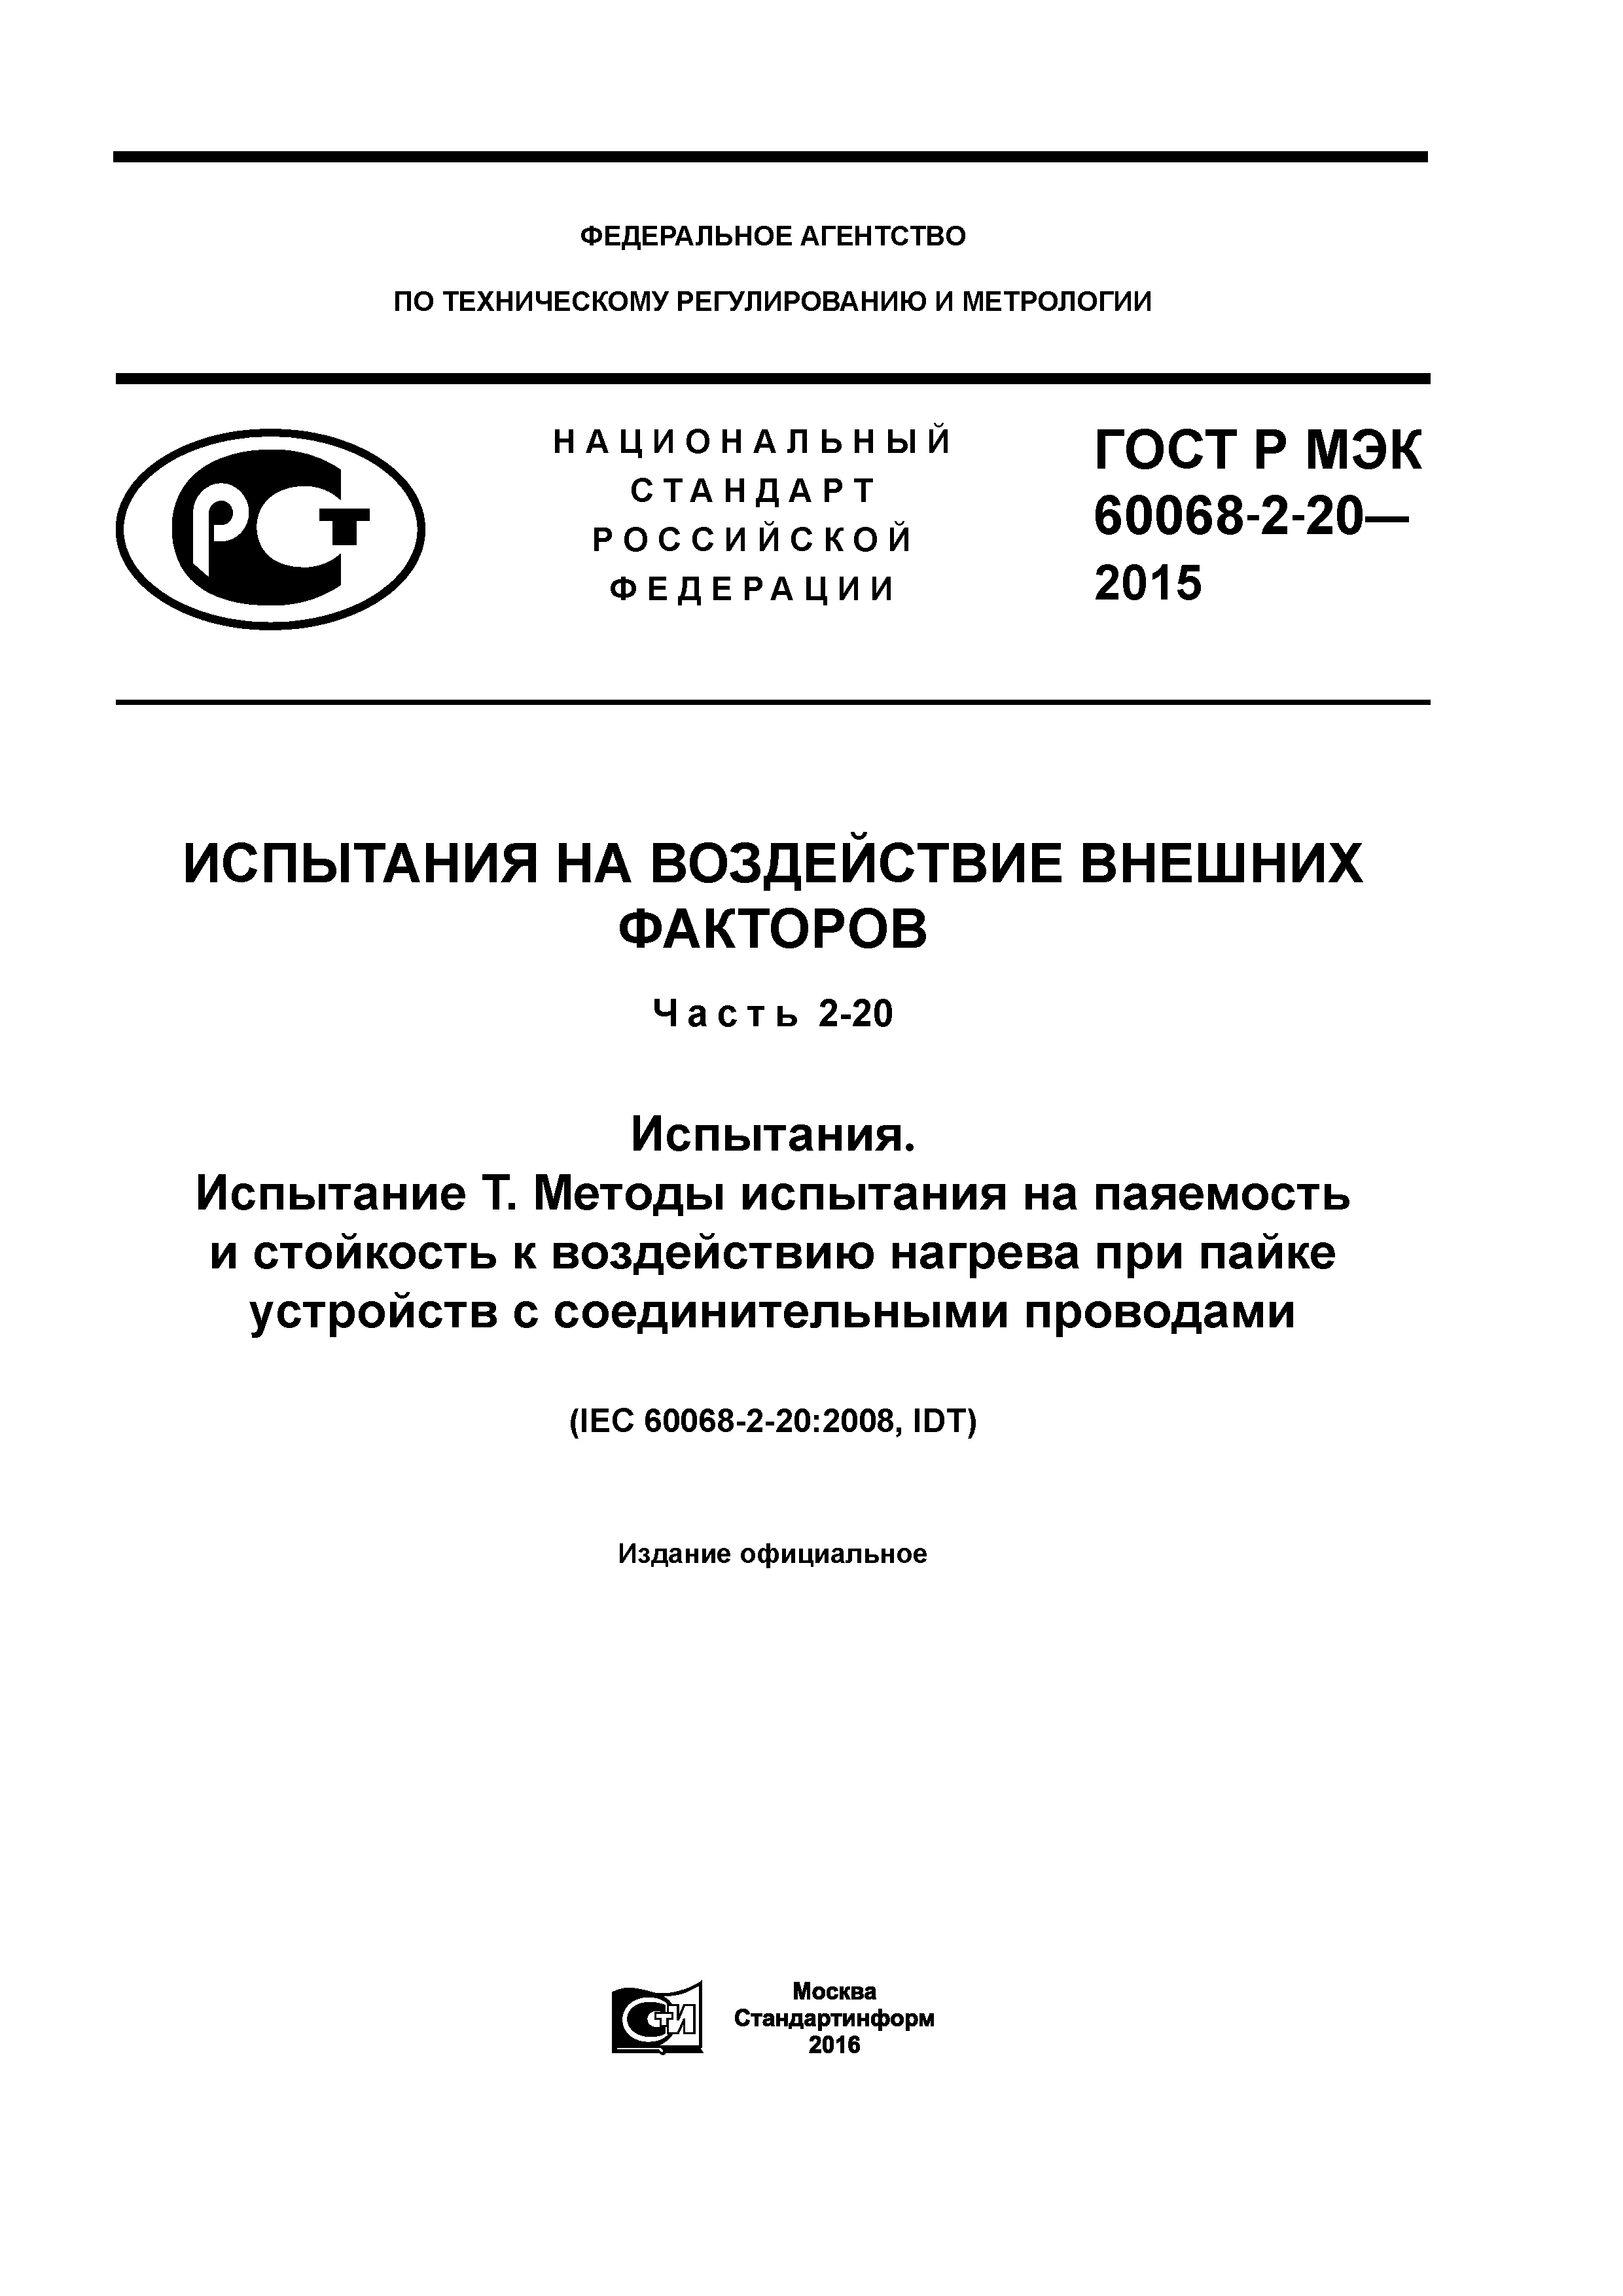 ГОСТ Р МЭК 60068-2-20-2015